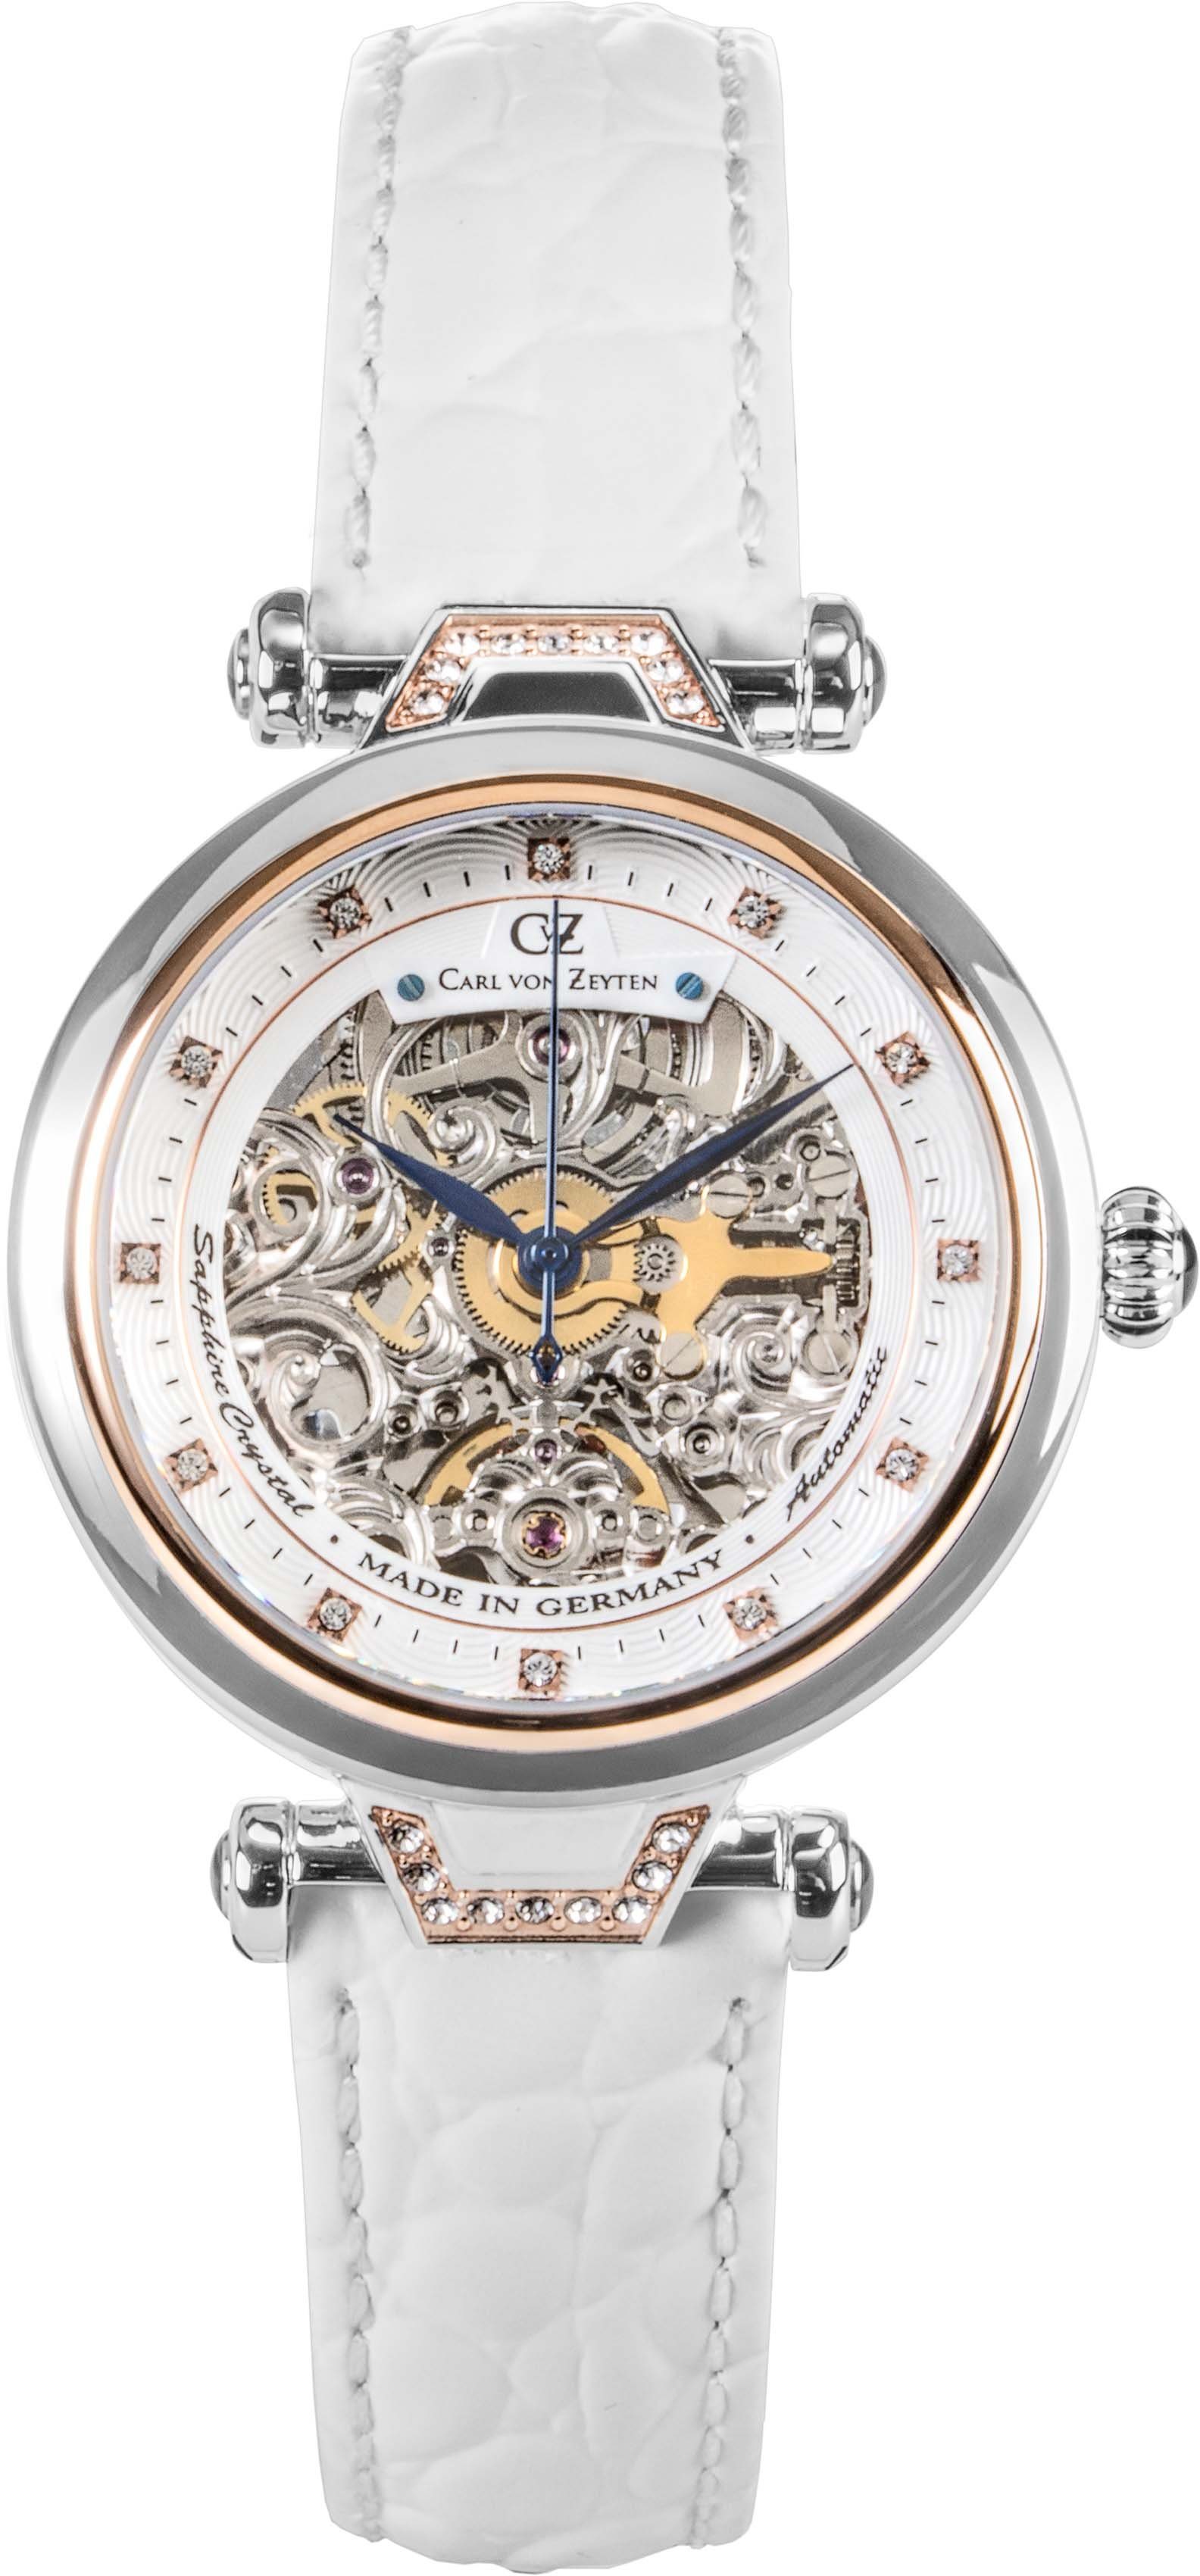 Carl von Zeyten Automatikuhr Simonswald, CVZ0070RWHS, Armbanduhr, Damenuhr, Saphirglas, Made in Germany, Mechanische Uhr